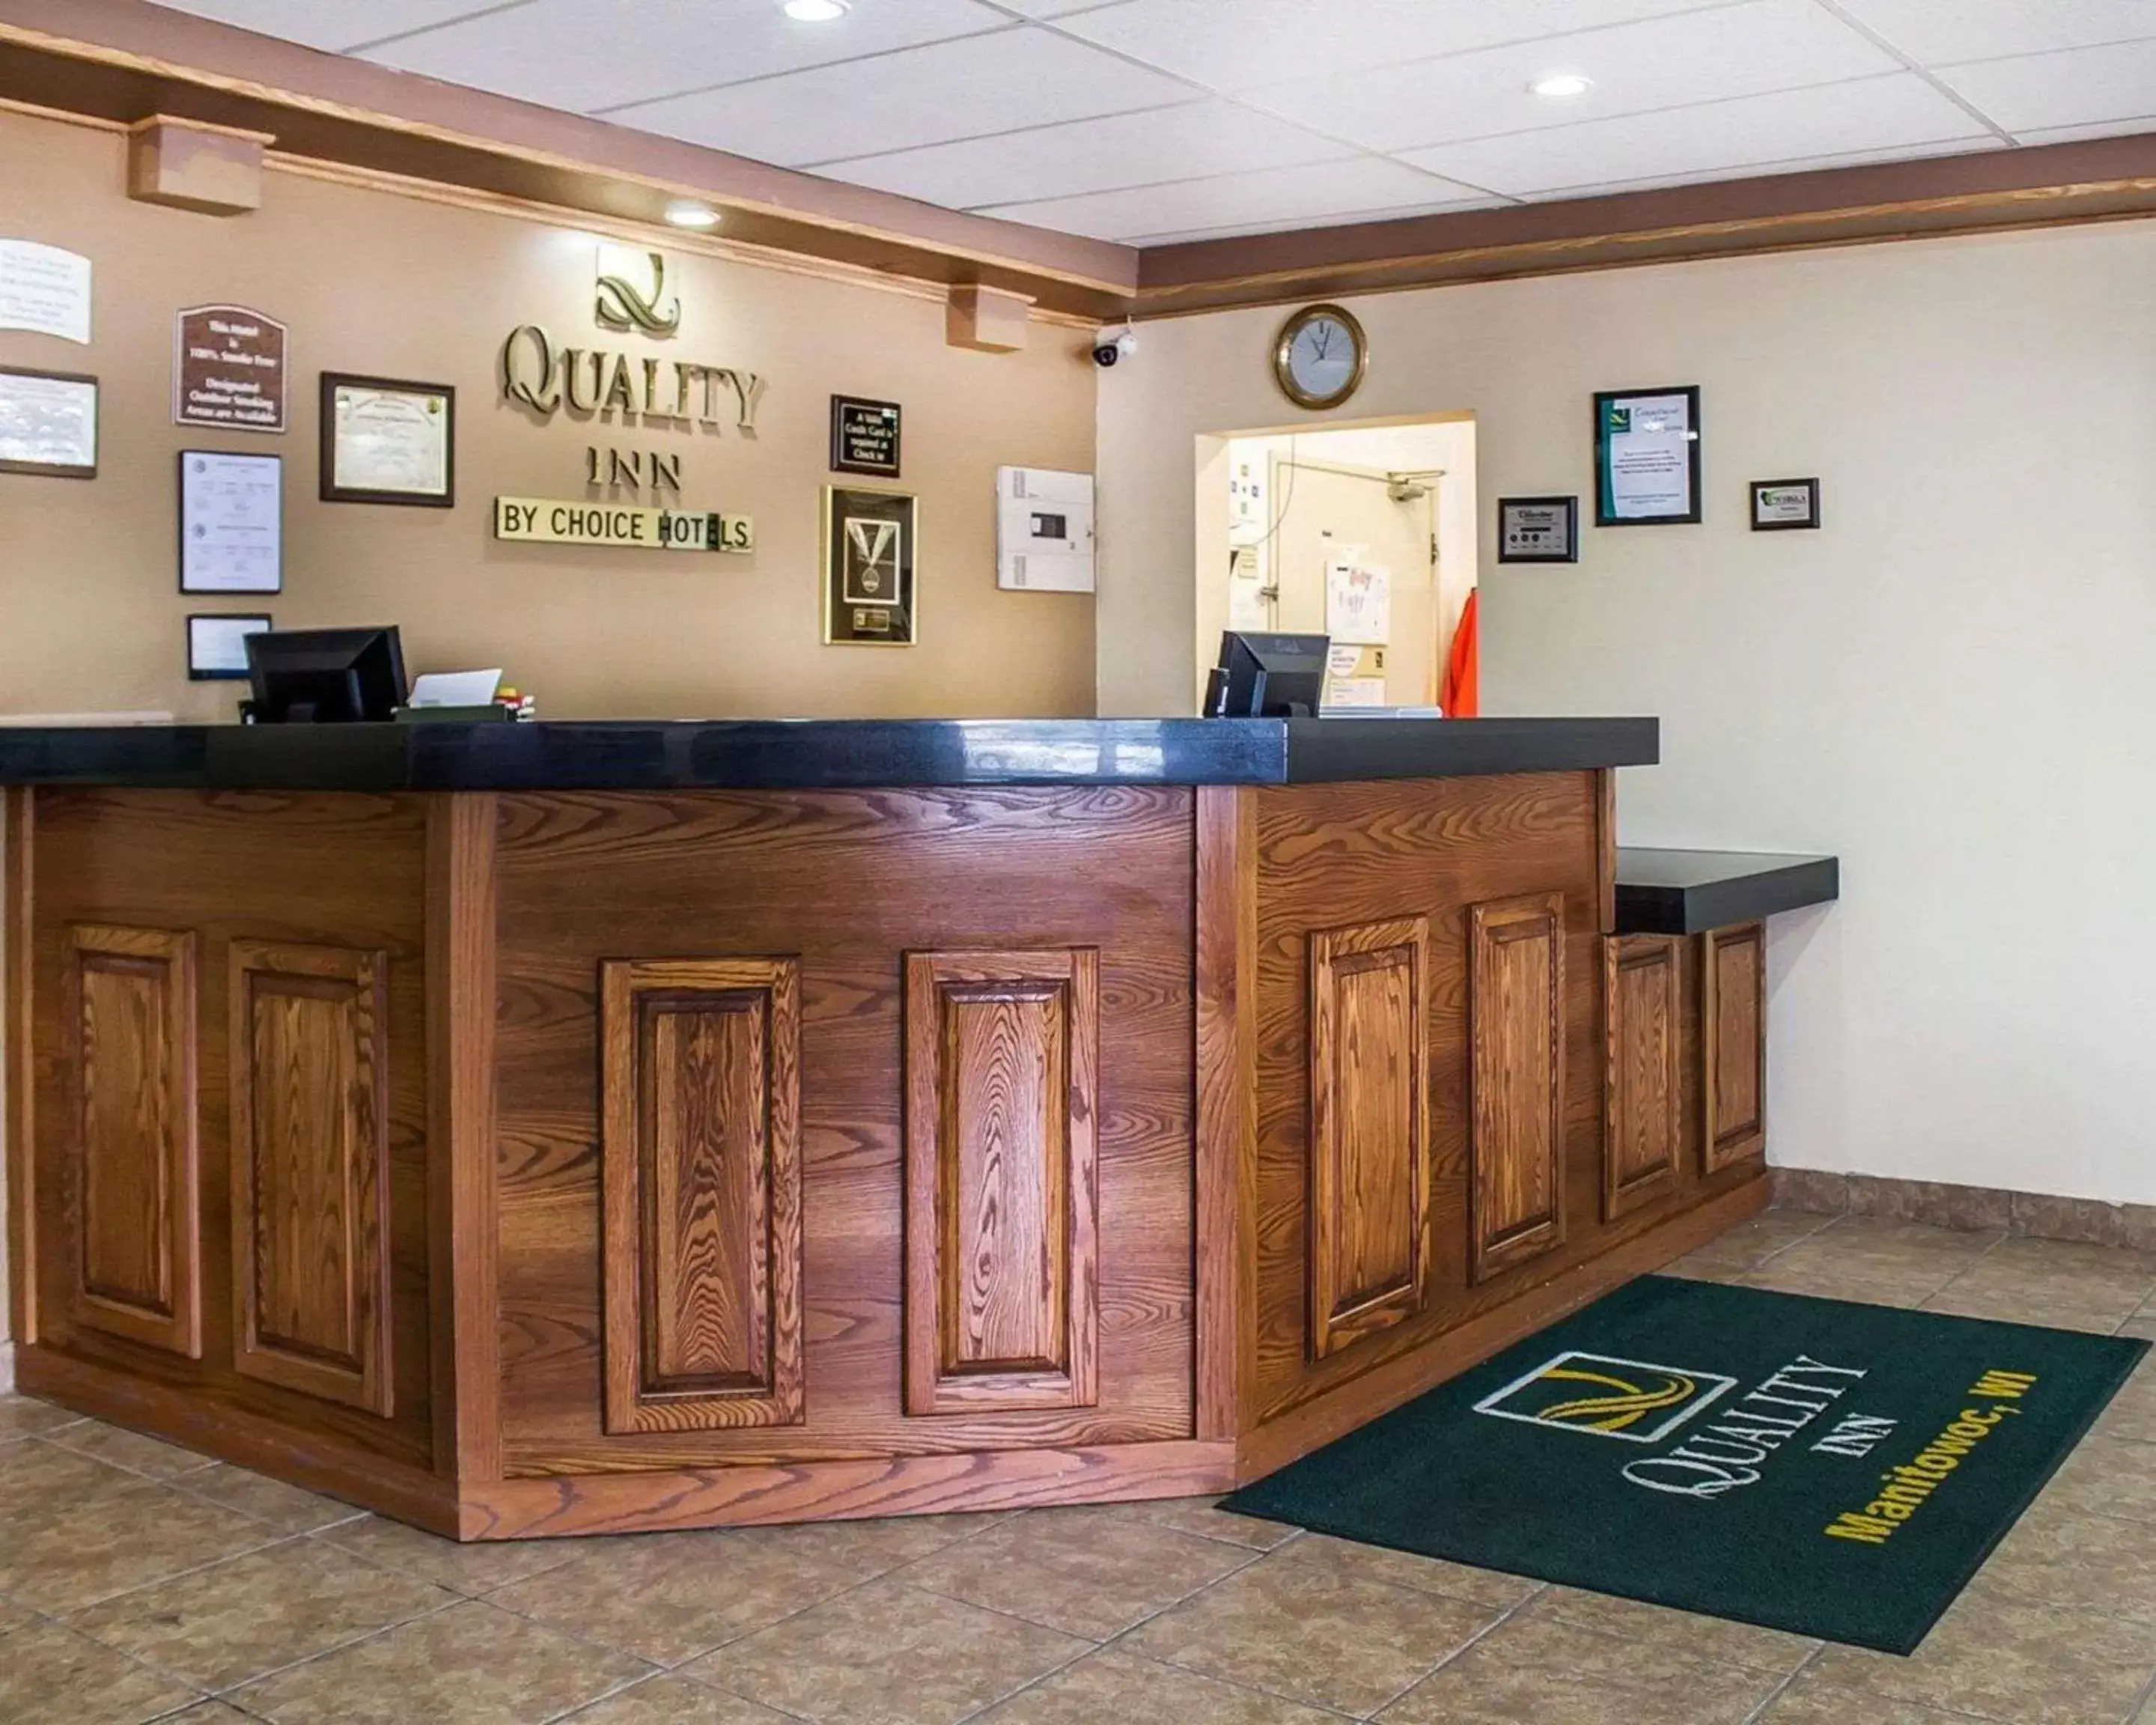 Lobby or reception, Lobby/Reception in Quality Inn Manitowoc